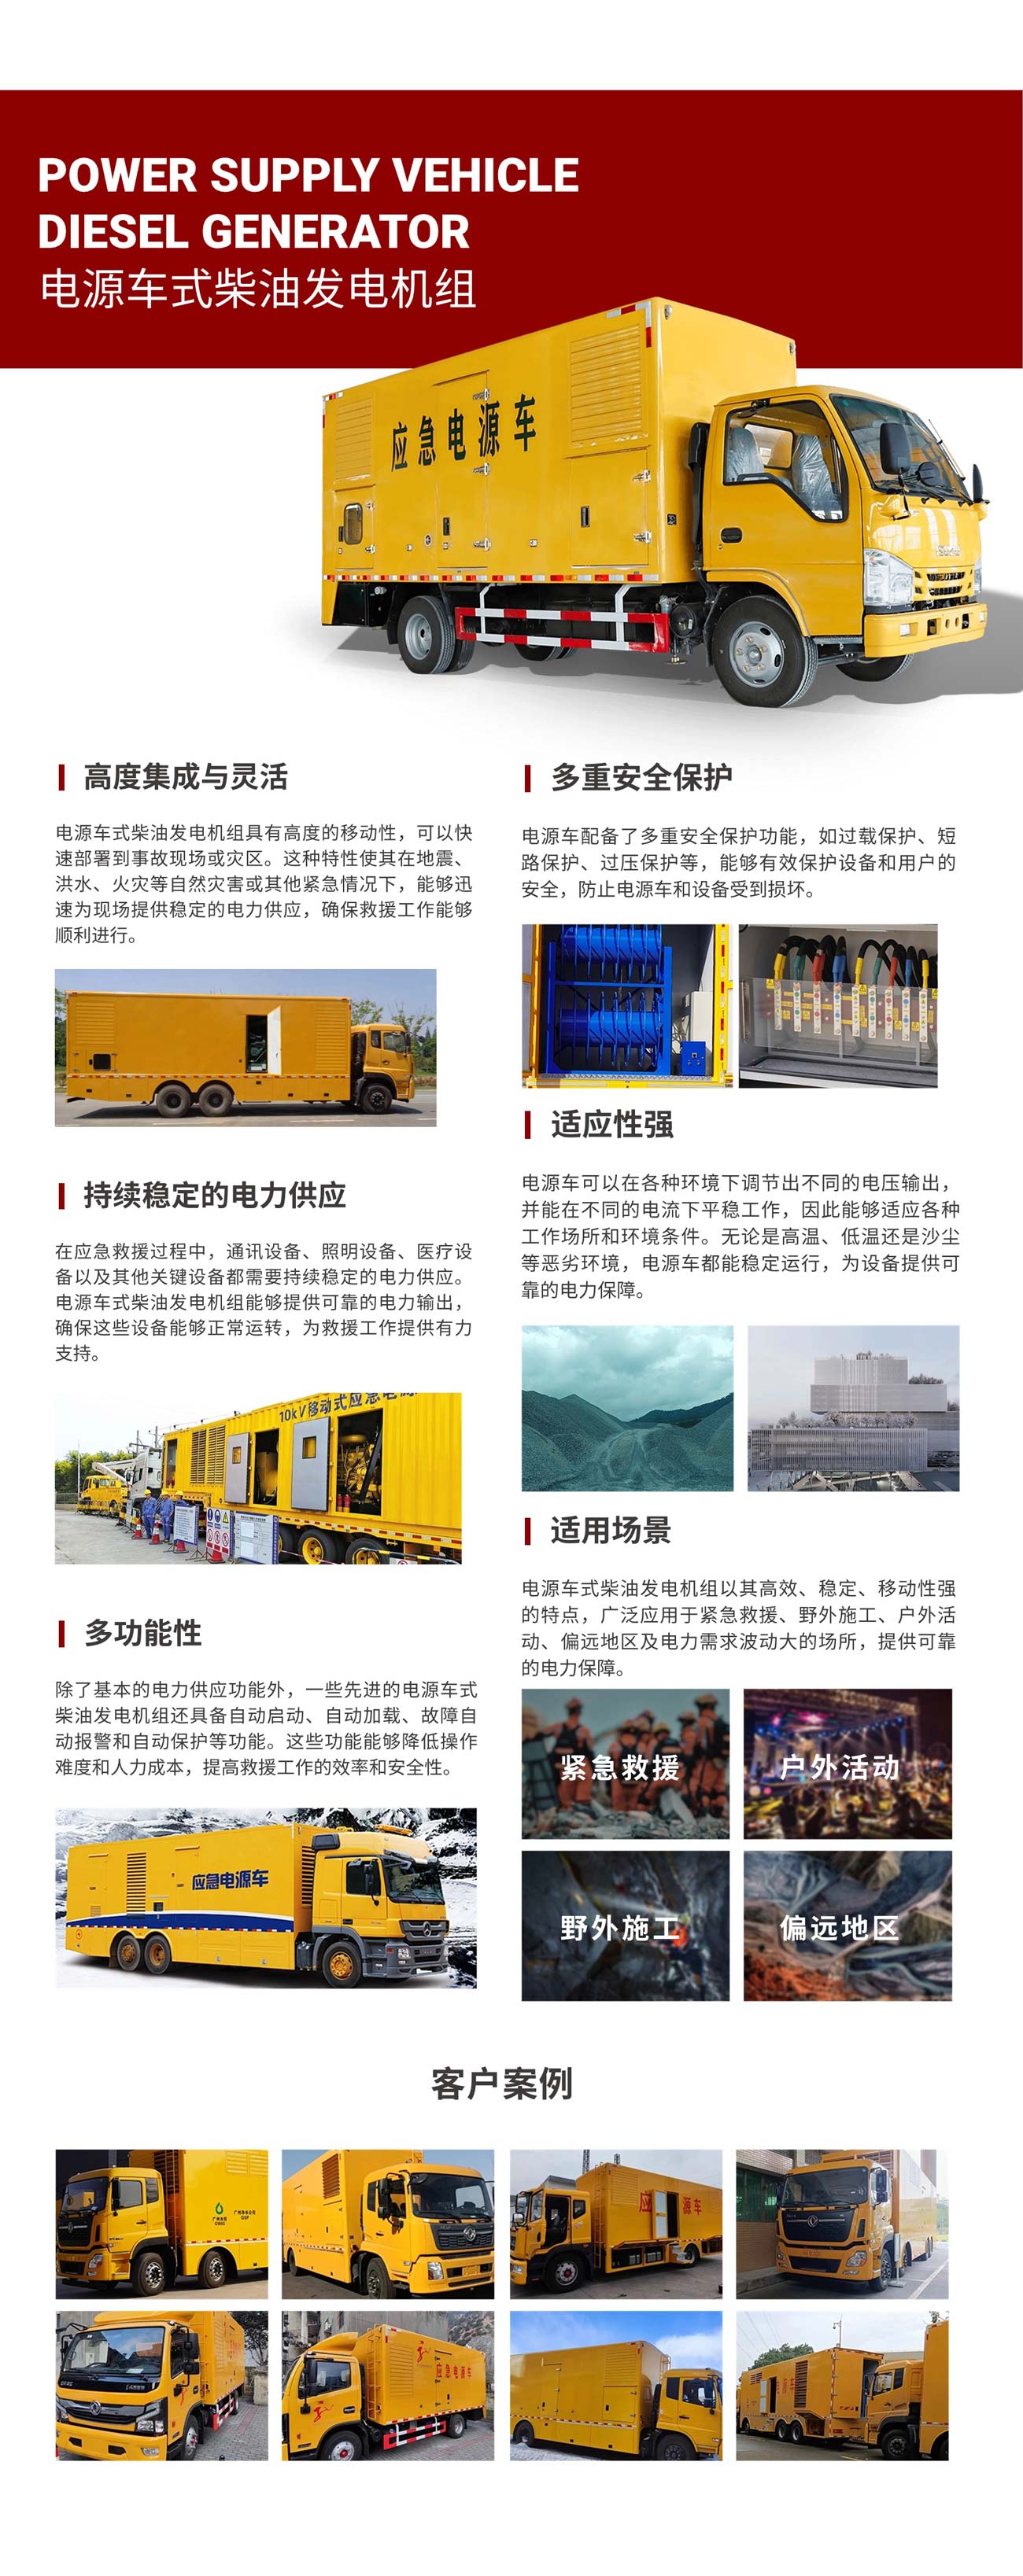 yp街机·电子游戏(中国)官方网站